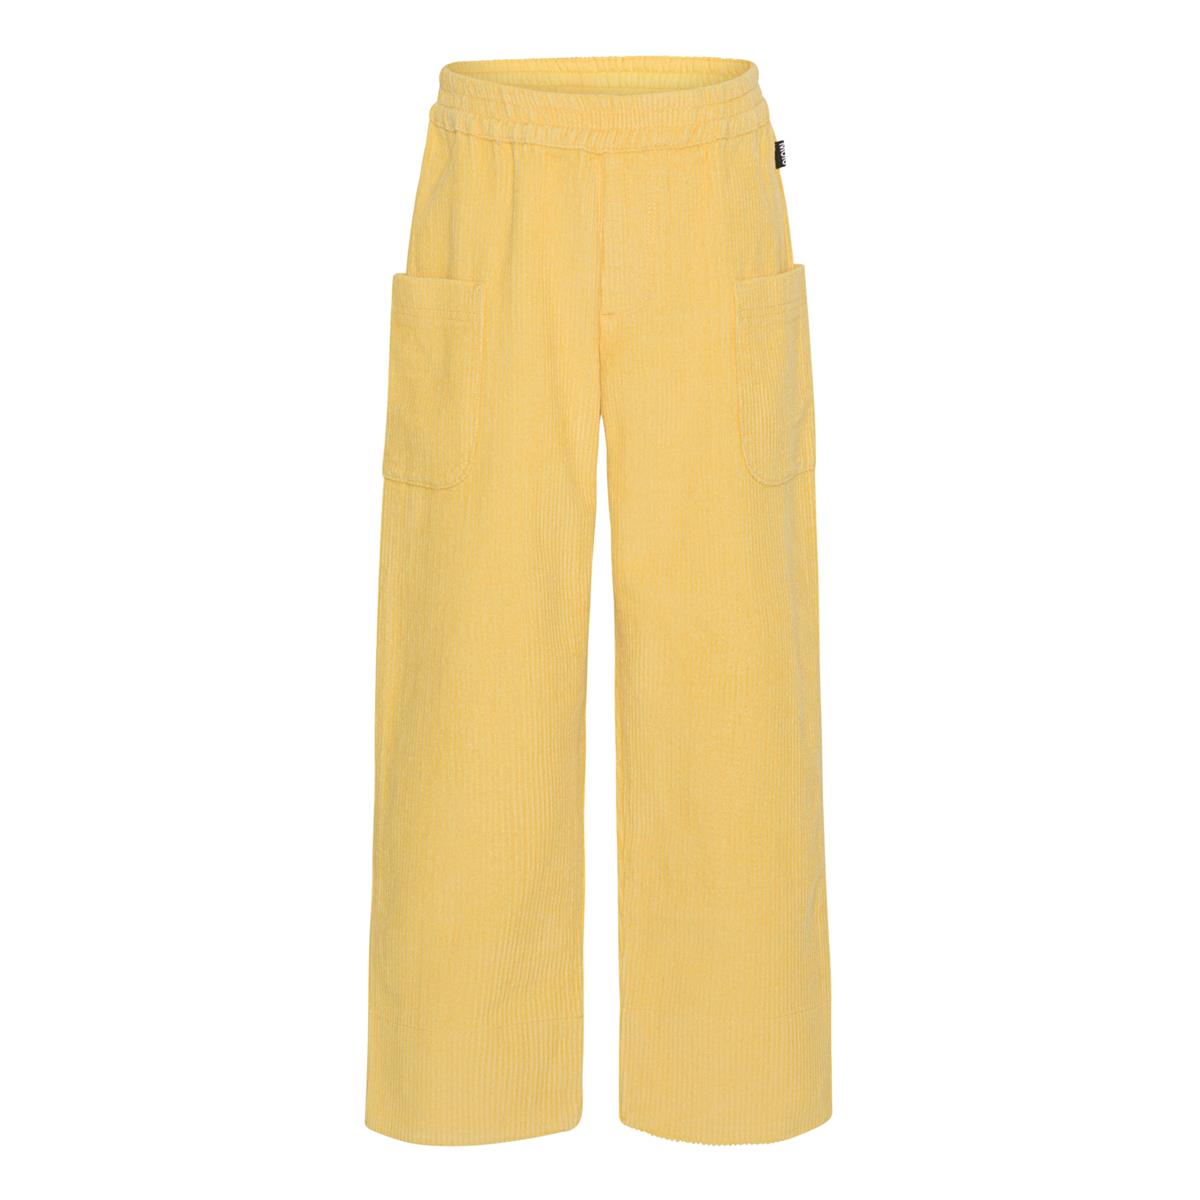 MOLO - ALFIA pants - yellow